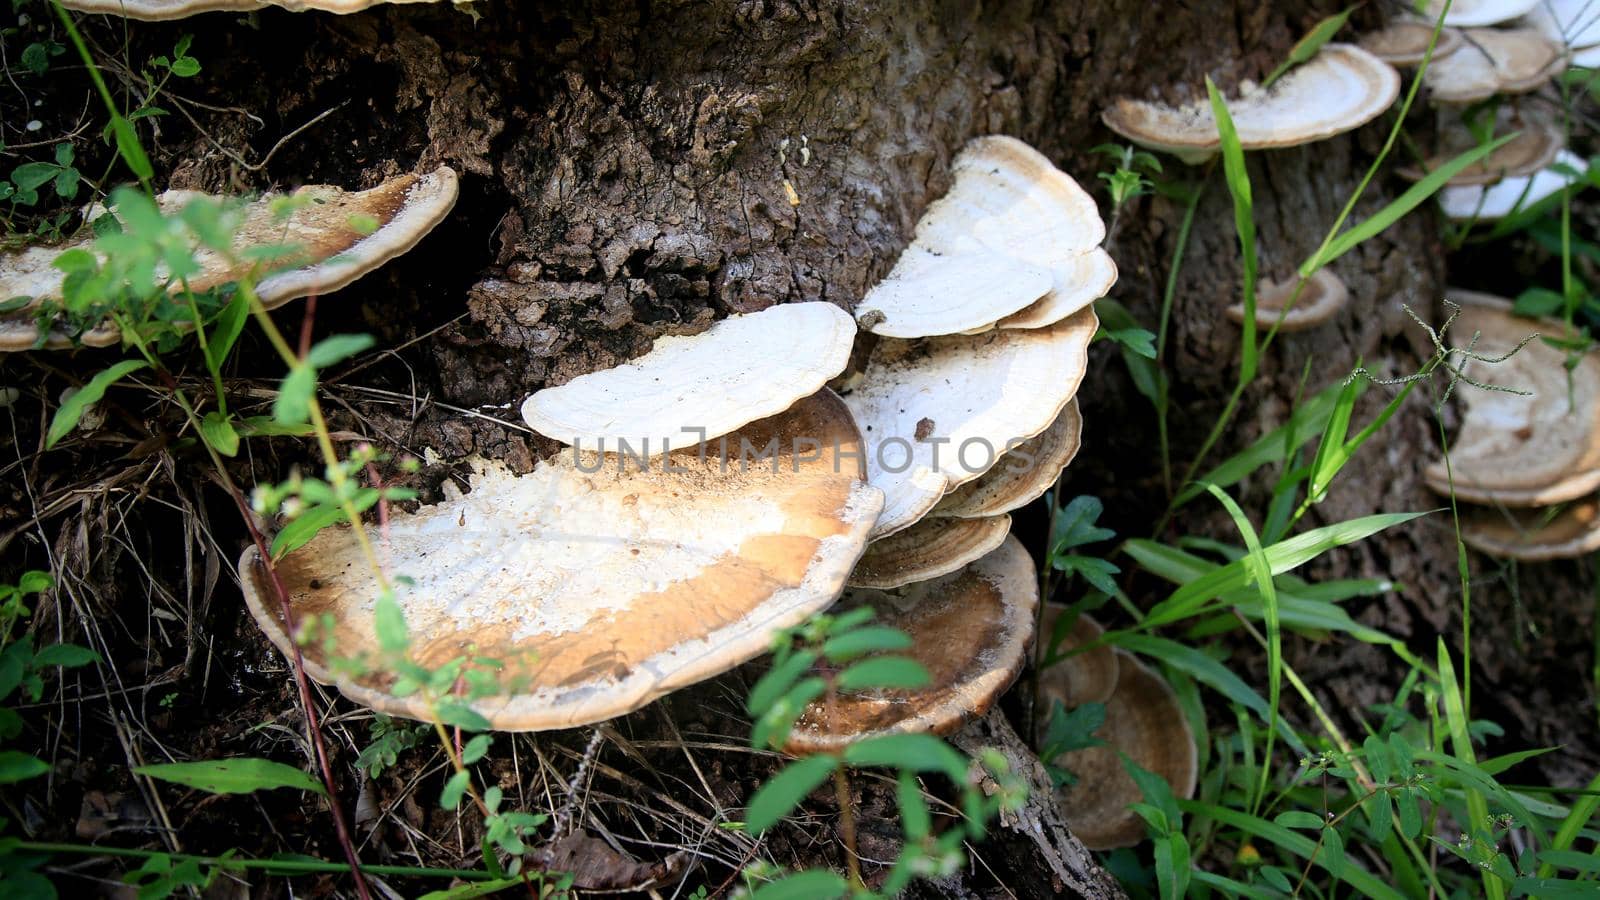 fungus on tree trunk by joasouza